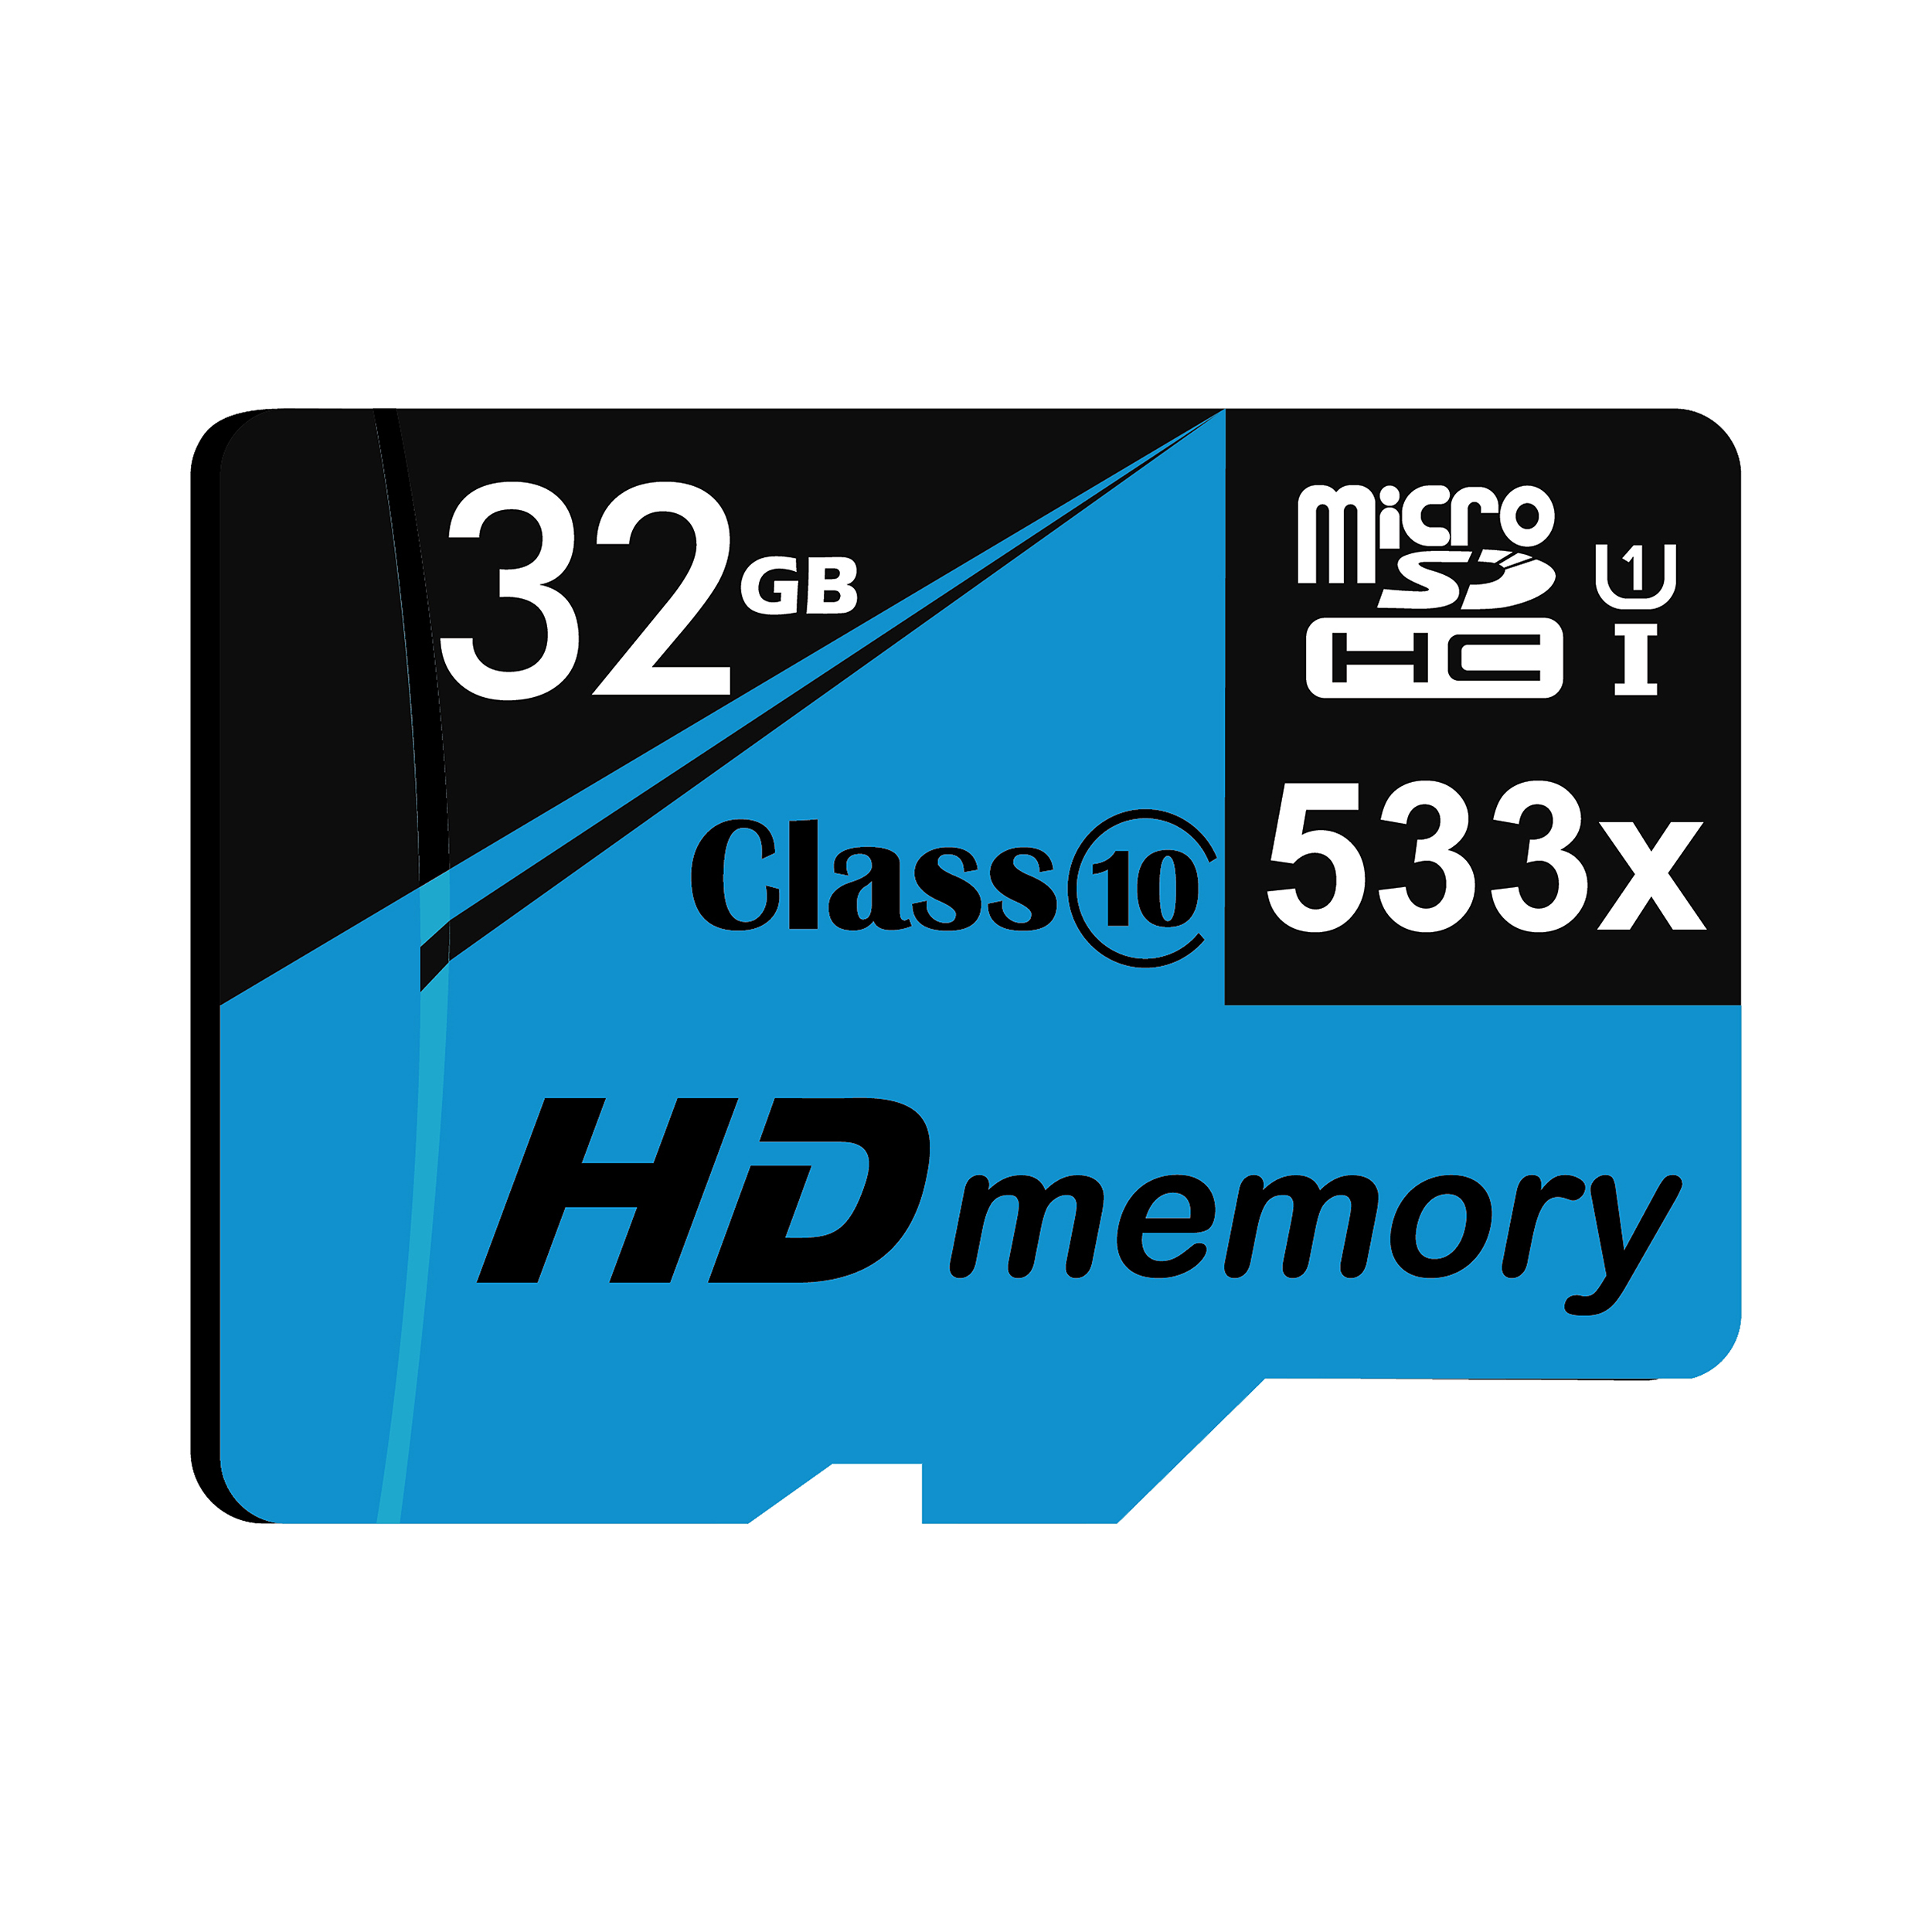 نقد و بررسی کارت حافظه microSDHC مدل HD-01 کلاس 10 استاندارد UHS-I U1 سرعت 80MBs ظرفیت 32 گیگابایت توسط خریداران